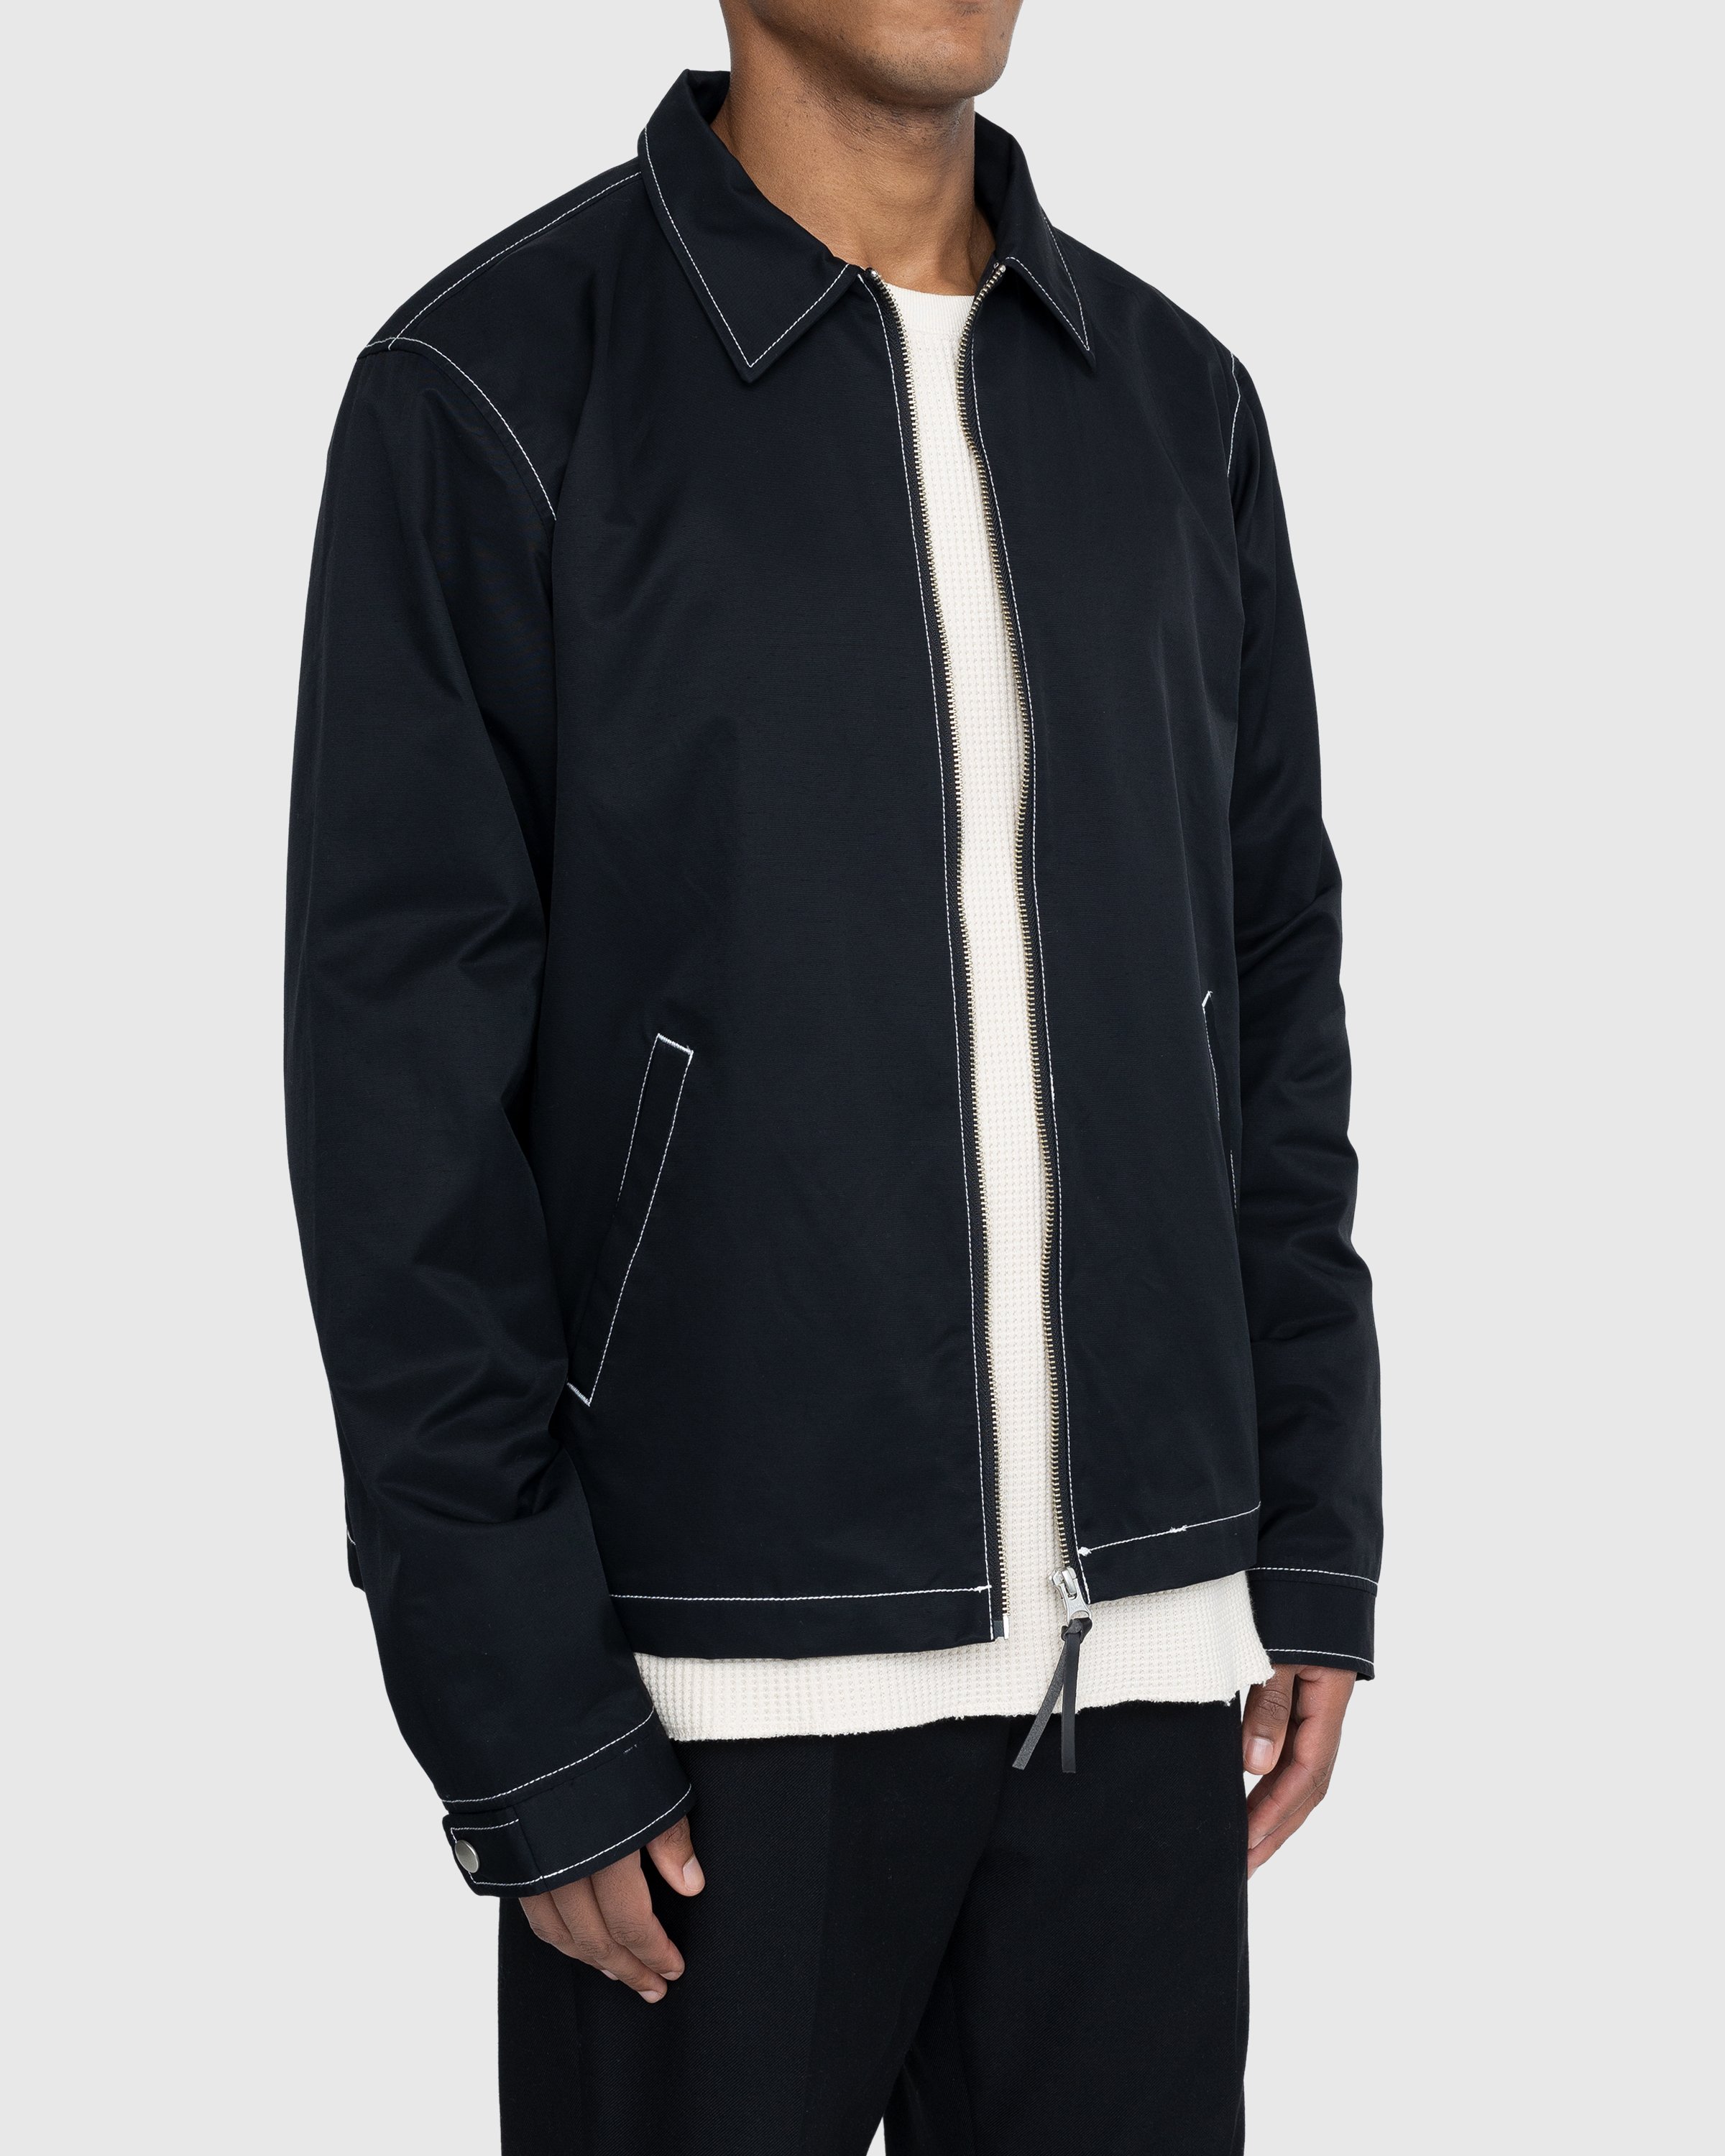 Highsnobiety - Brushed Nylon Jacket Black - Clothing - Black - Image 3